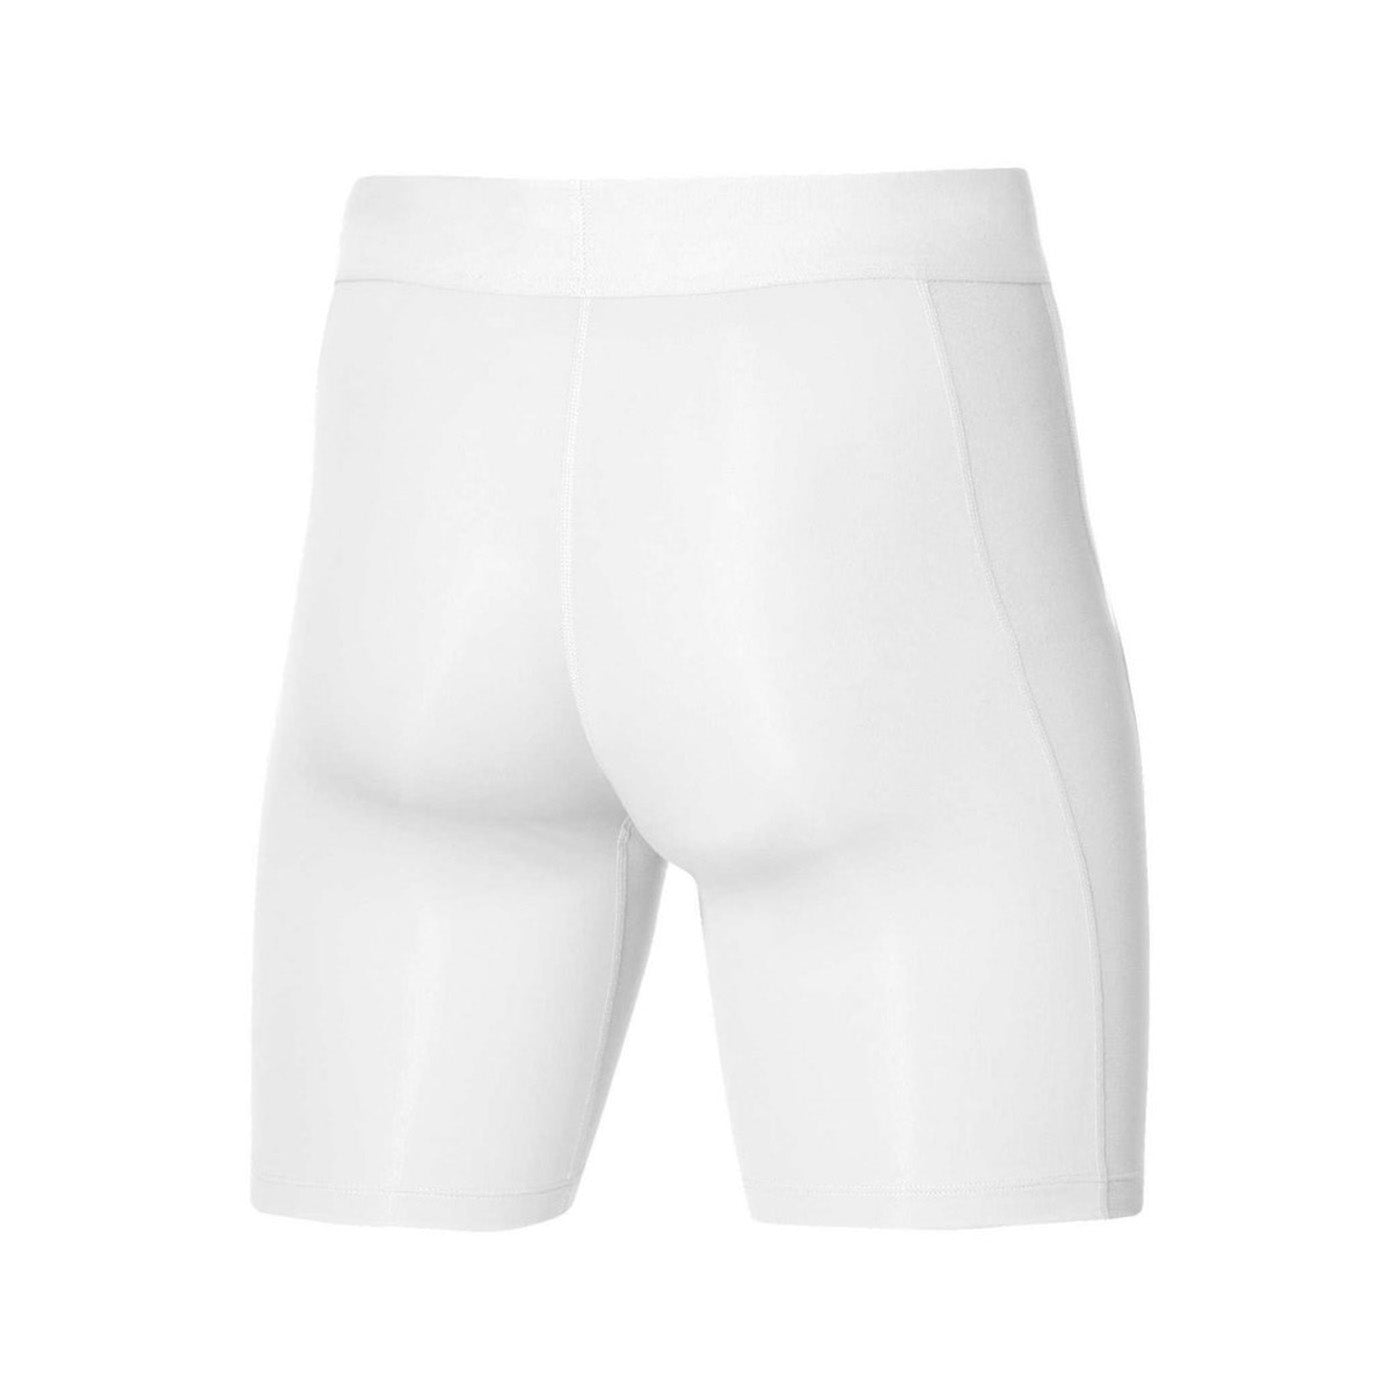 Strike Dri-FIT shorts, white